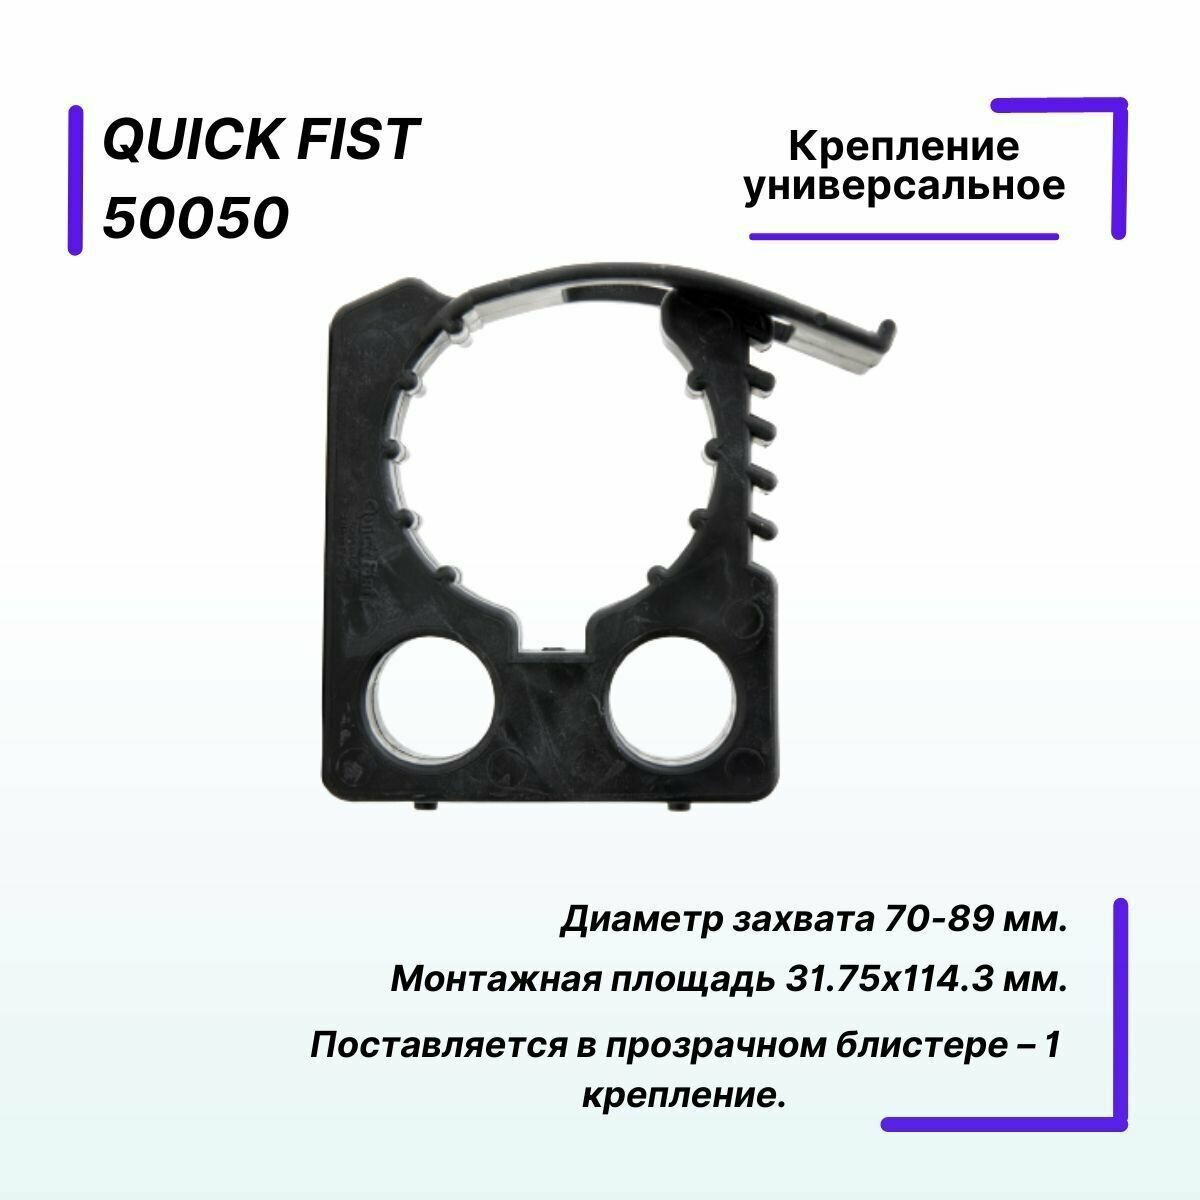 Крепление универсальное Quick Fist диаметр захвата 31.75 х 114.3 мм.